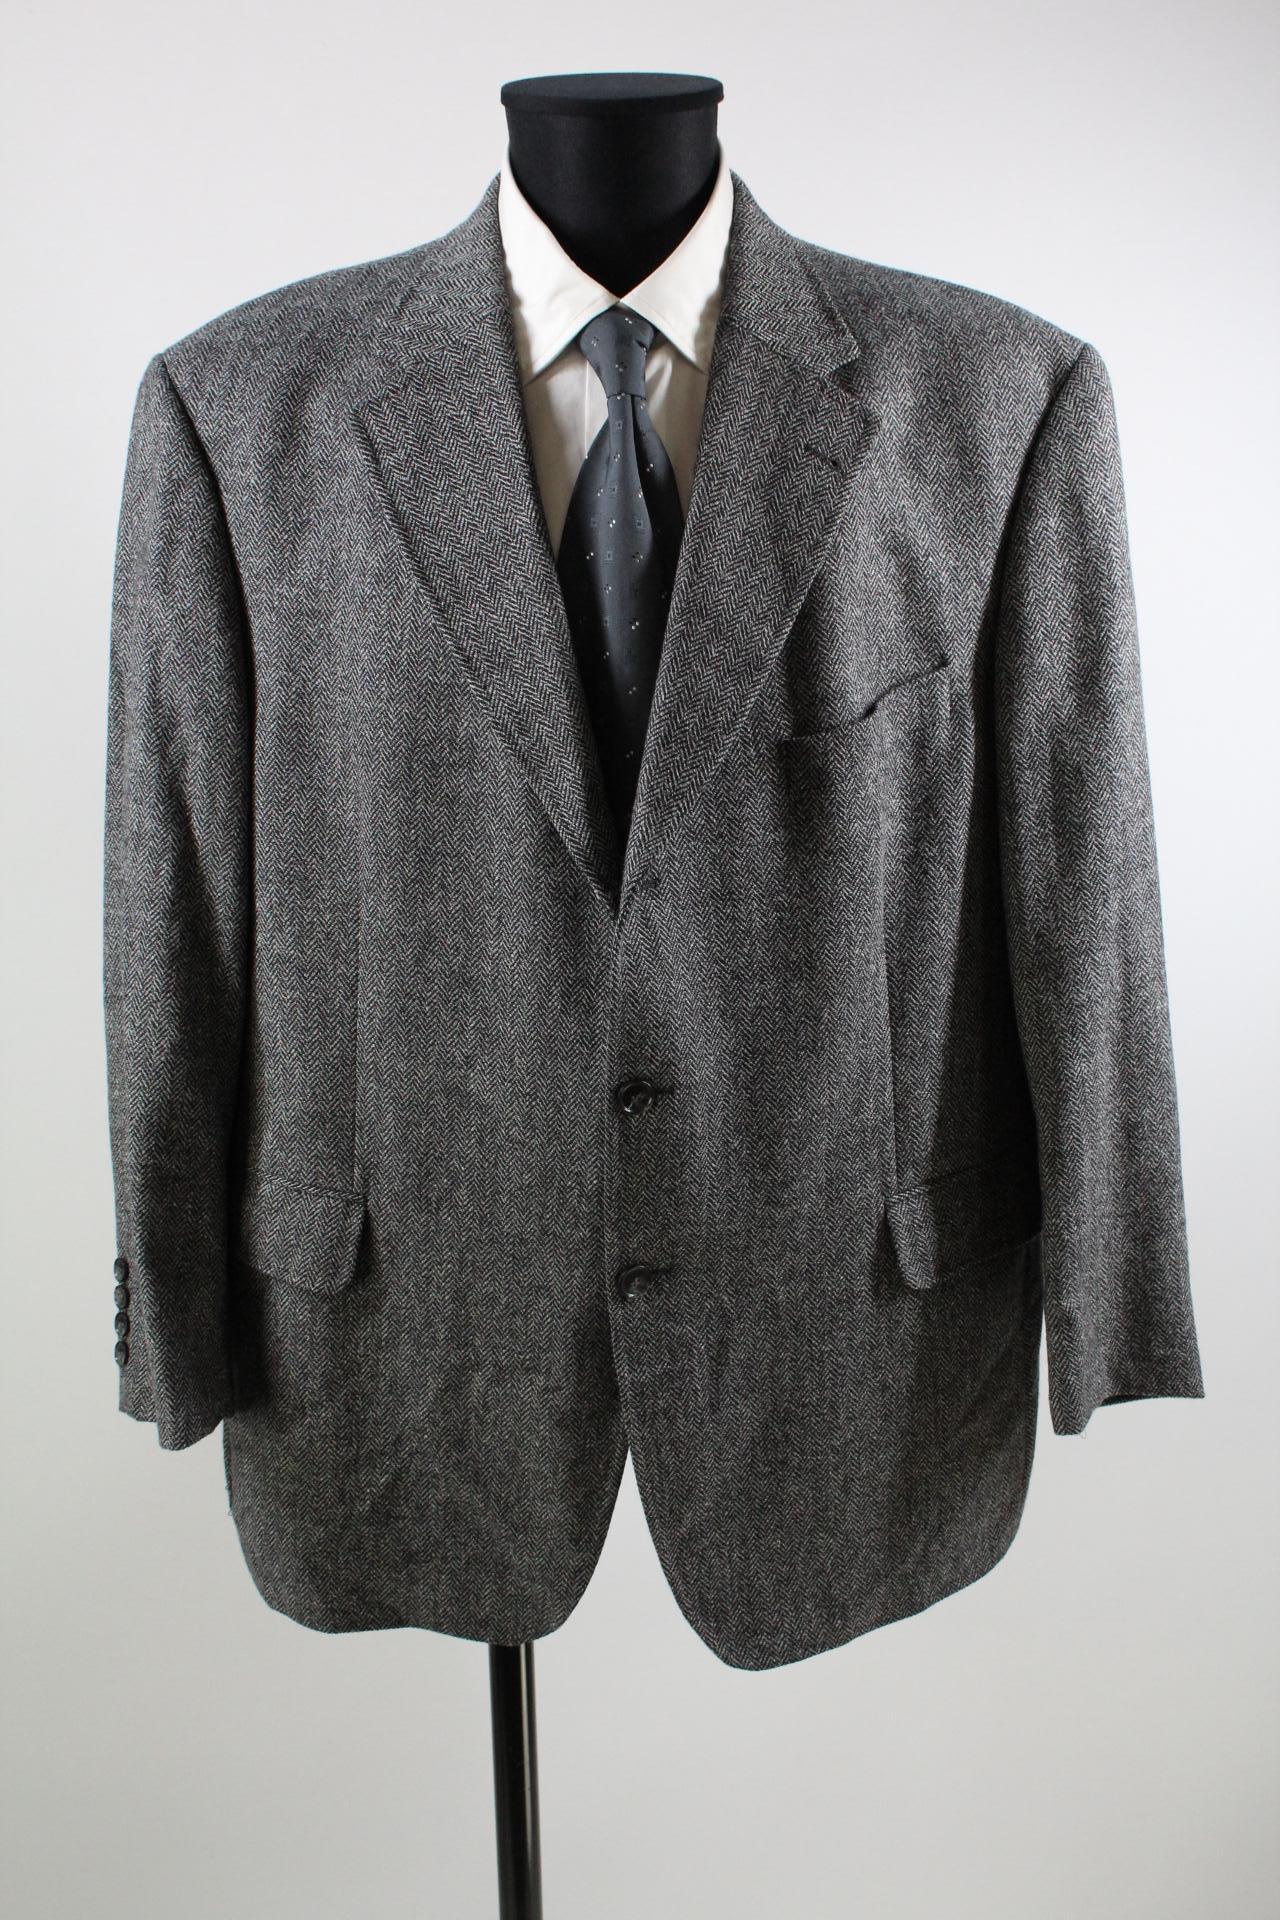 Atelier Torino Tweed-Sakko schwarz/weiß Größe 28